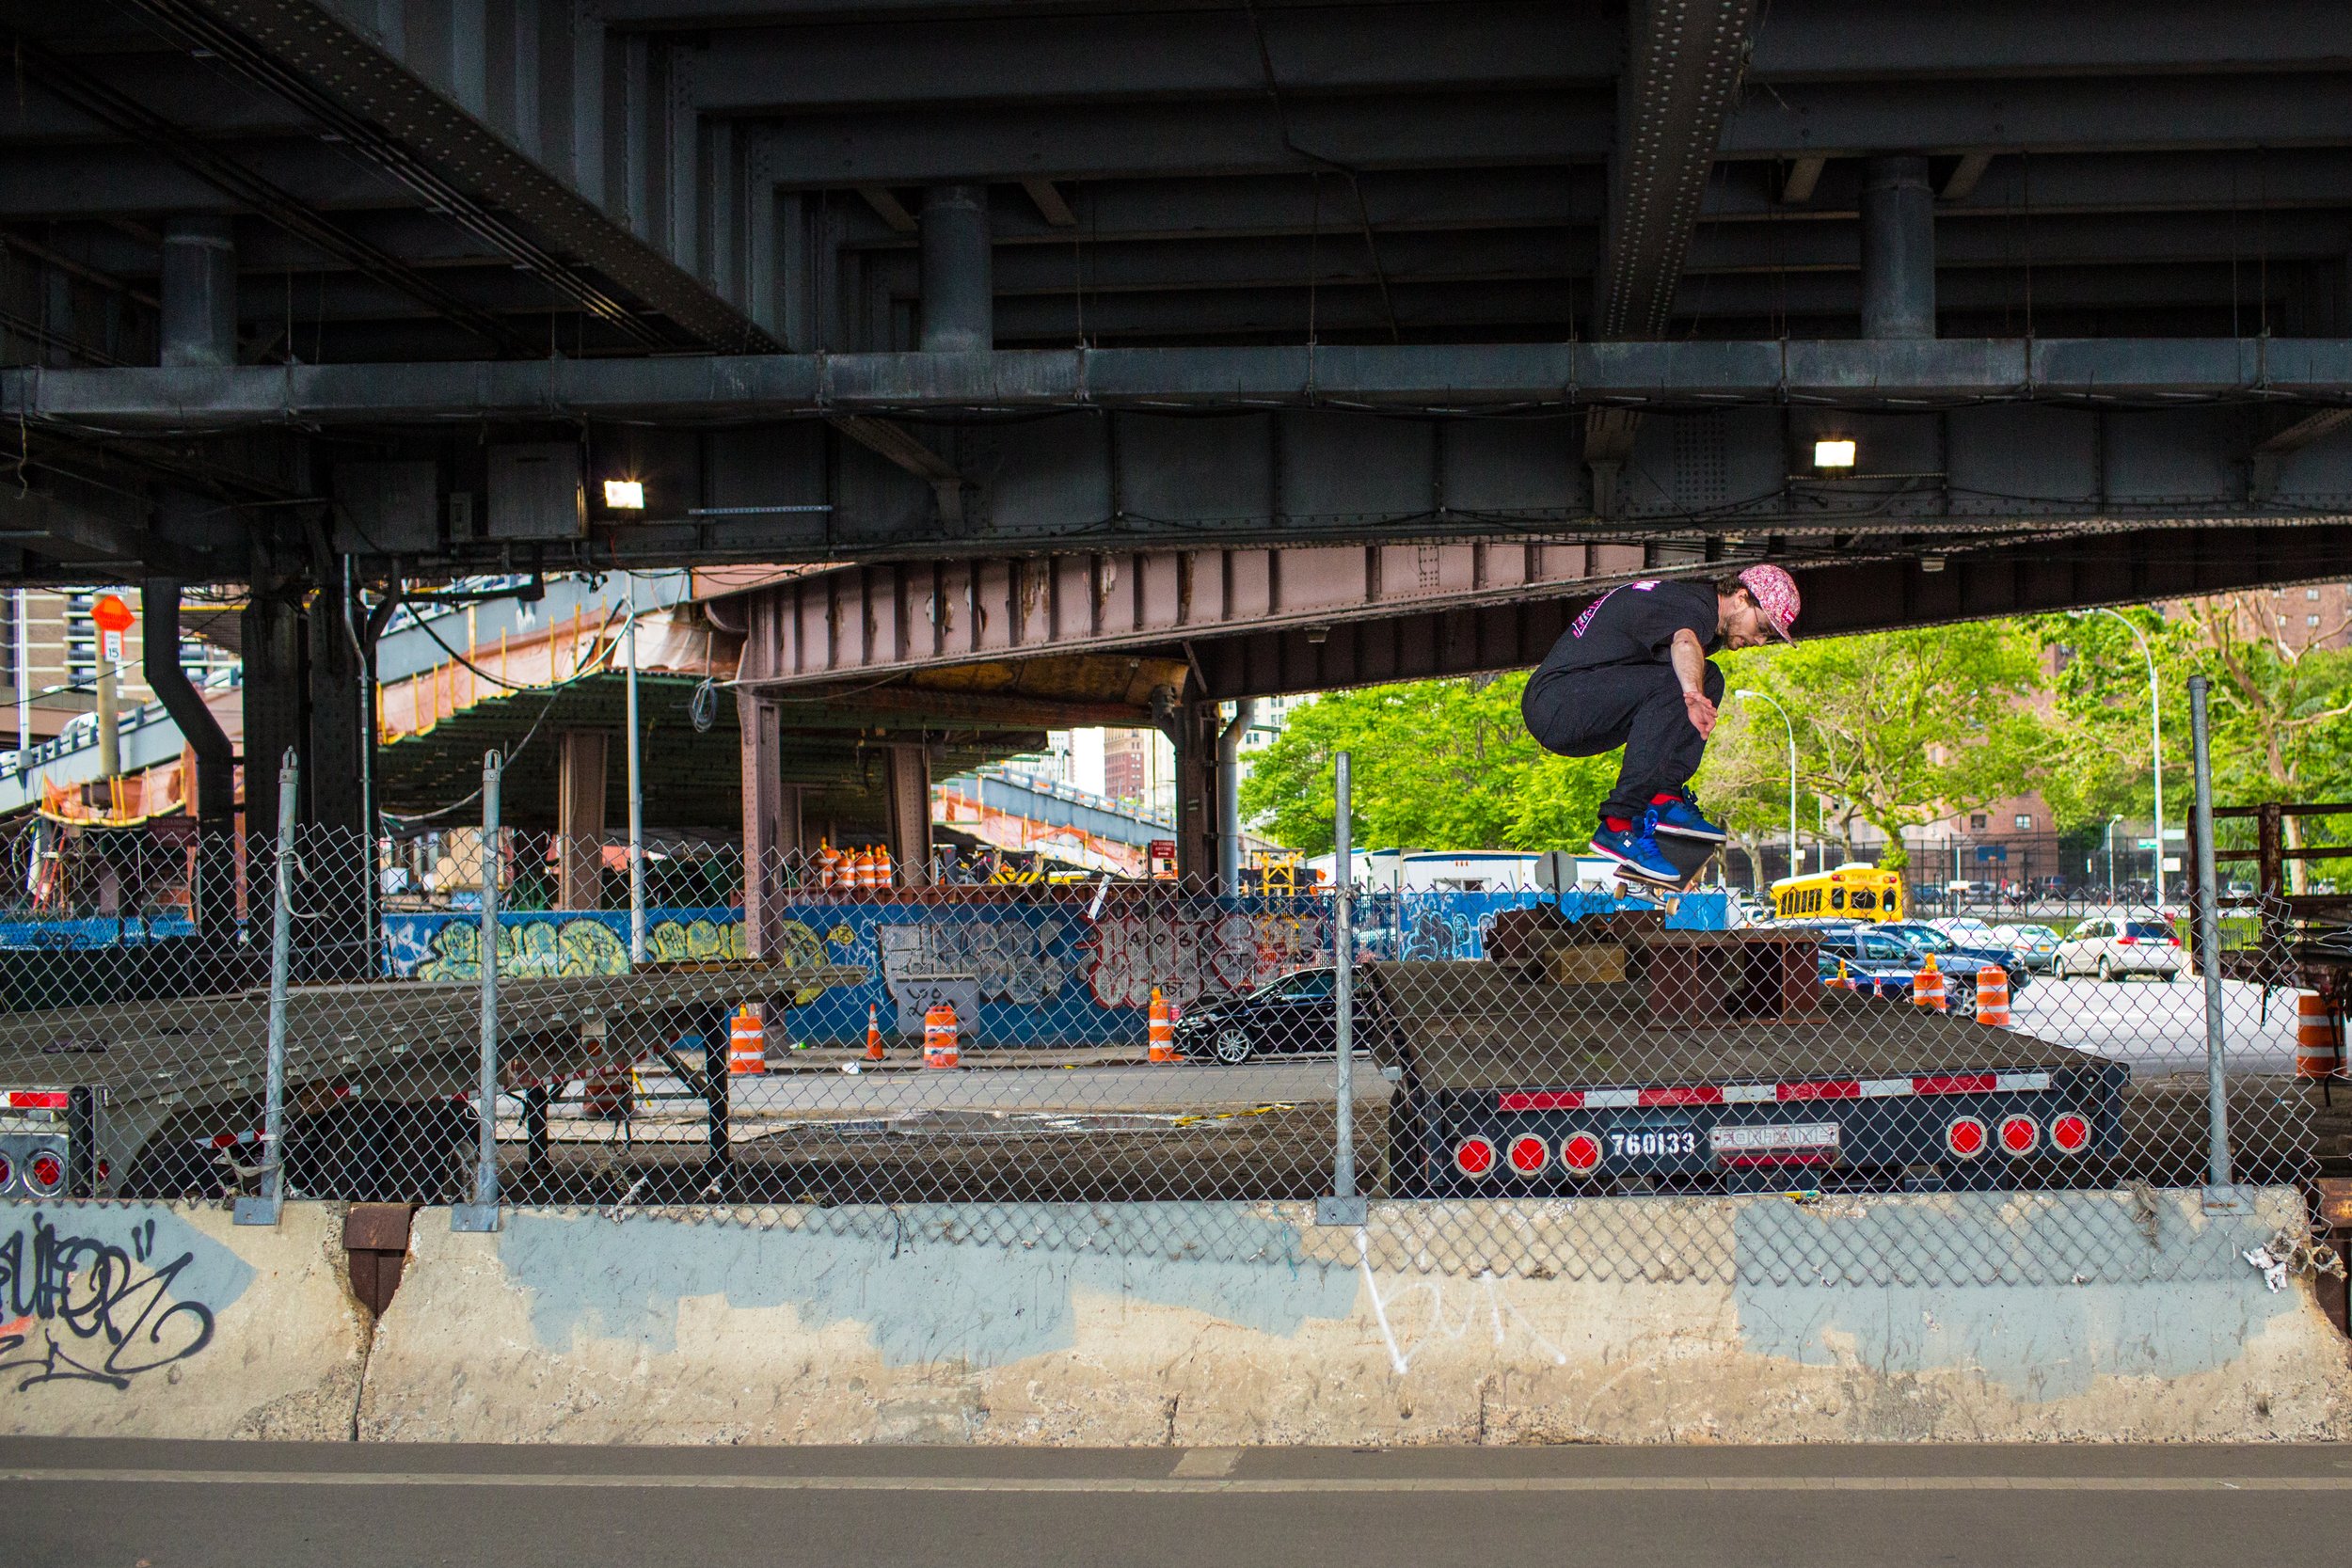  Skateboarder in NYC 